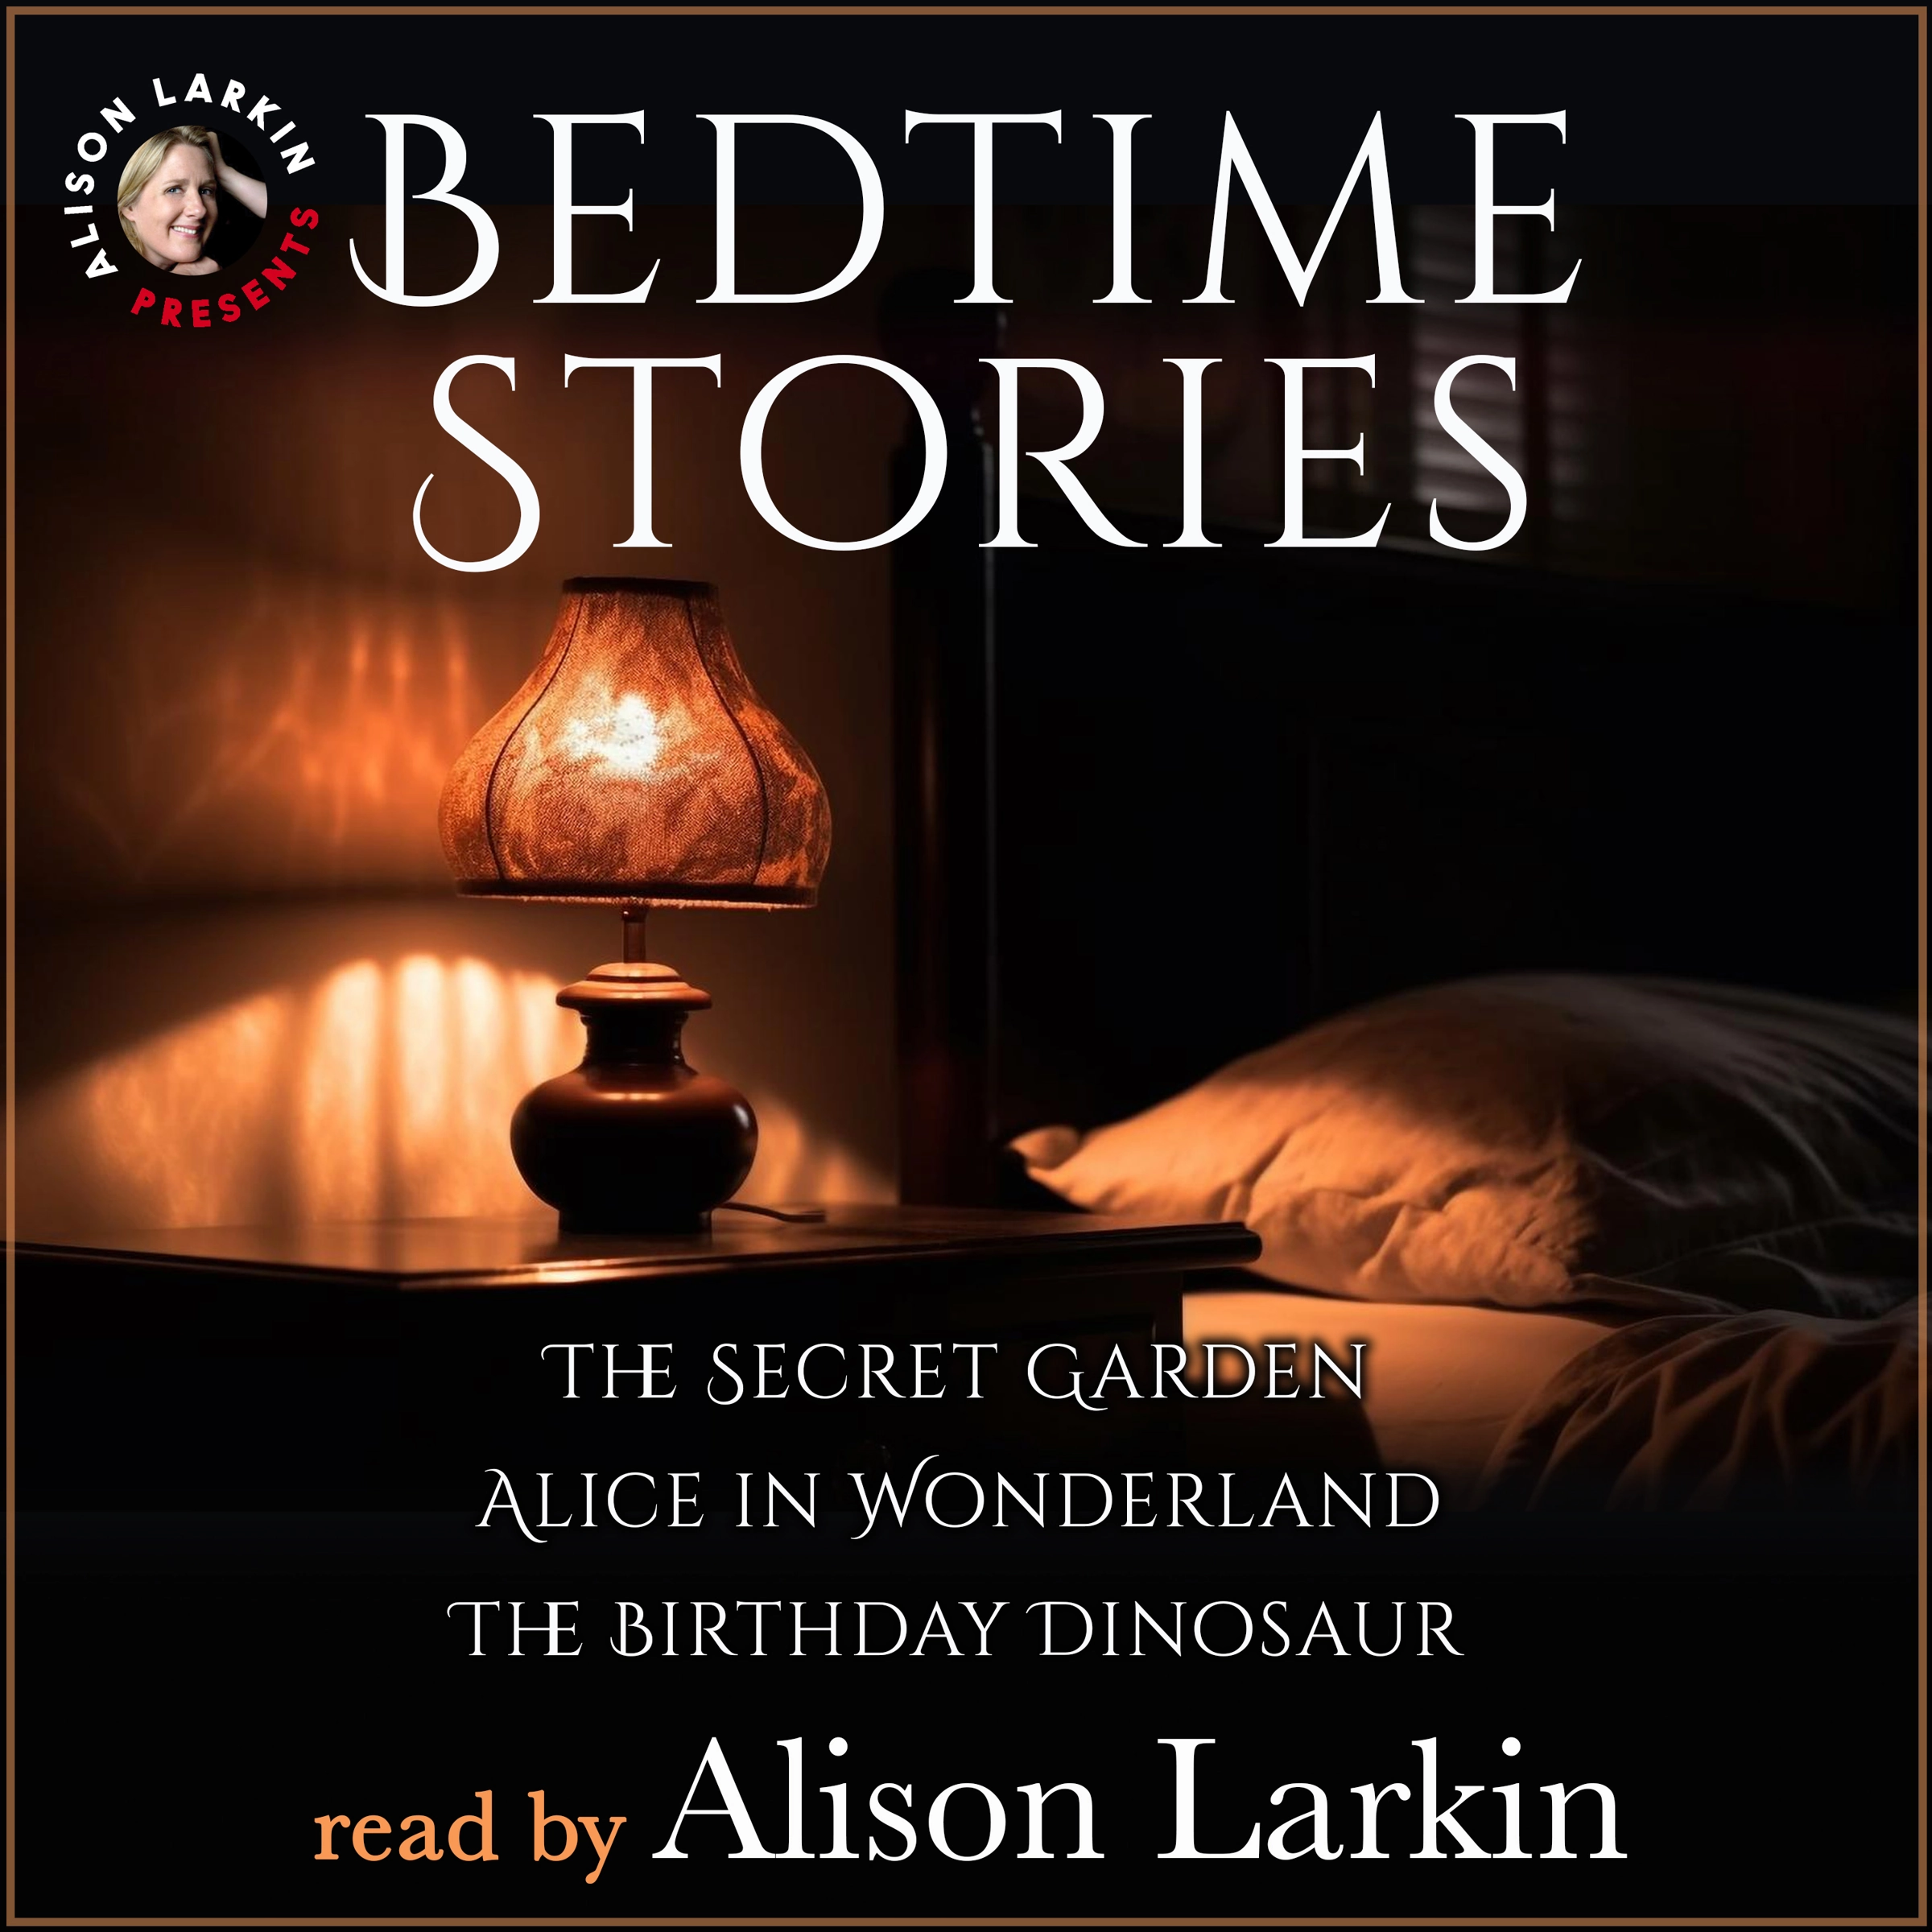 Bedtime Stories by Alison Larkin Audiobook